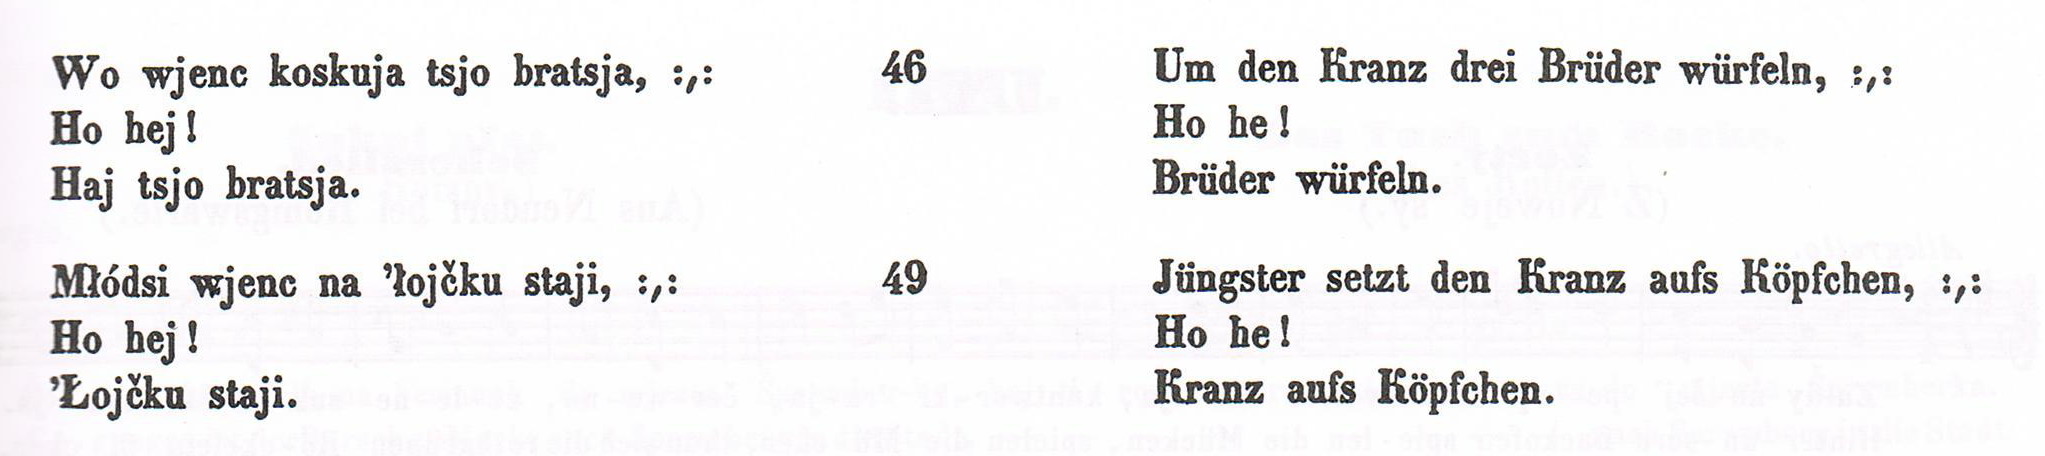 Поражение Барнима – эпическая песнь лютичей. 